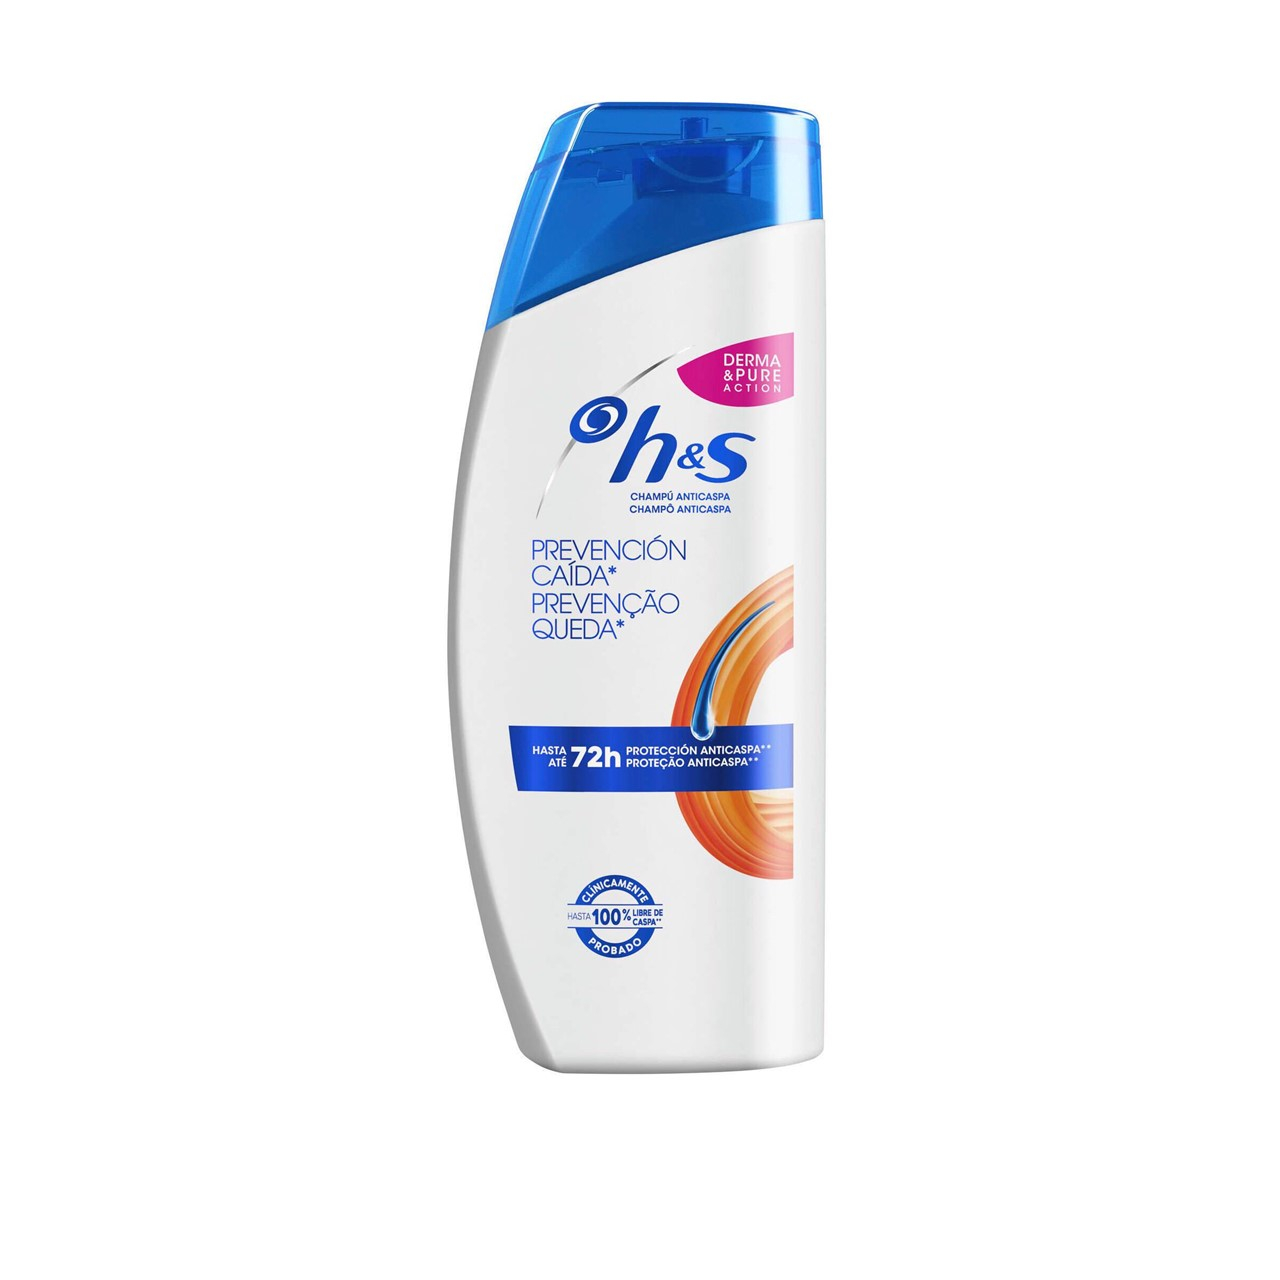 H&S Anti-Hair Loss Shampoo 650ml (21.98fl oz)